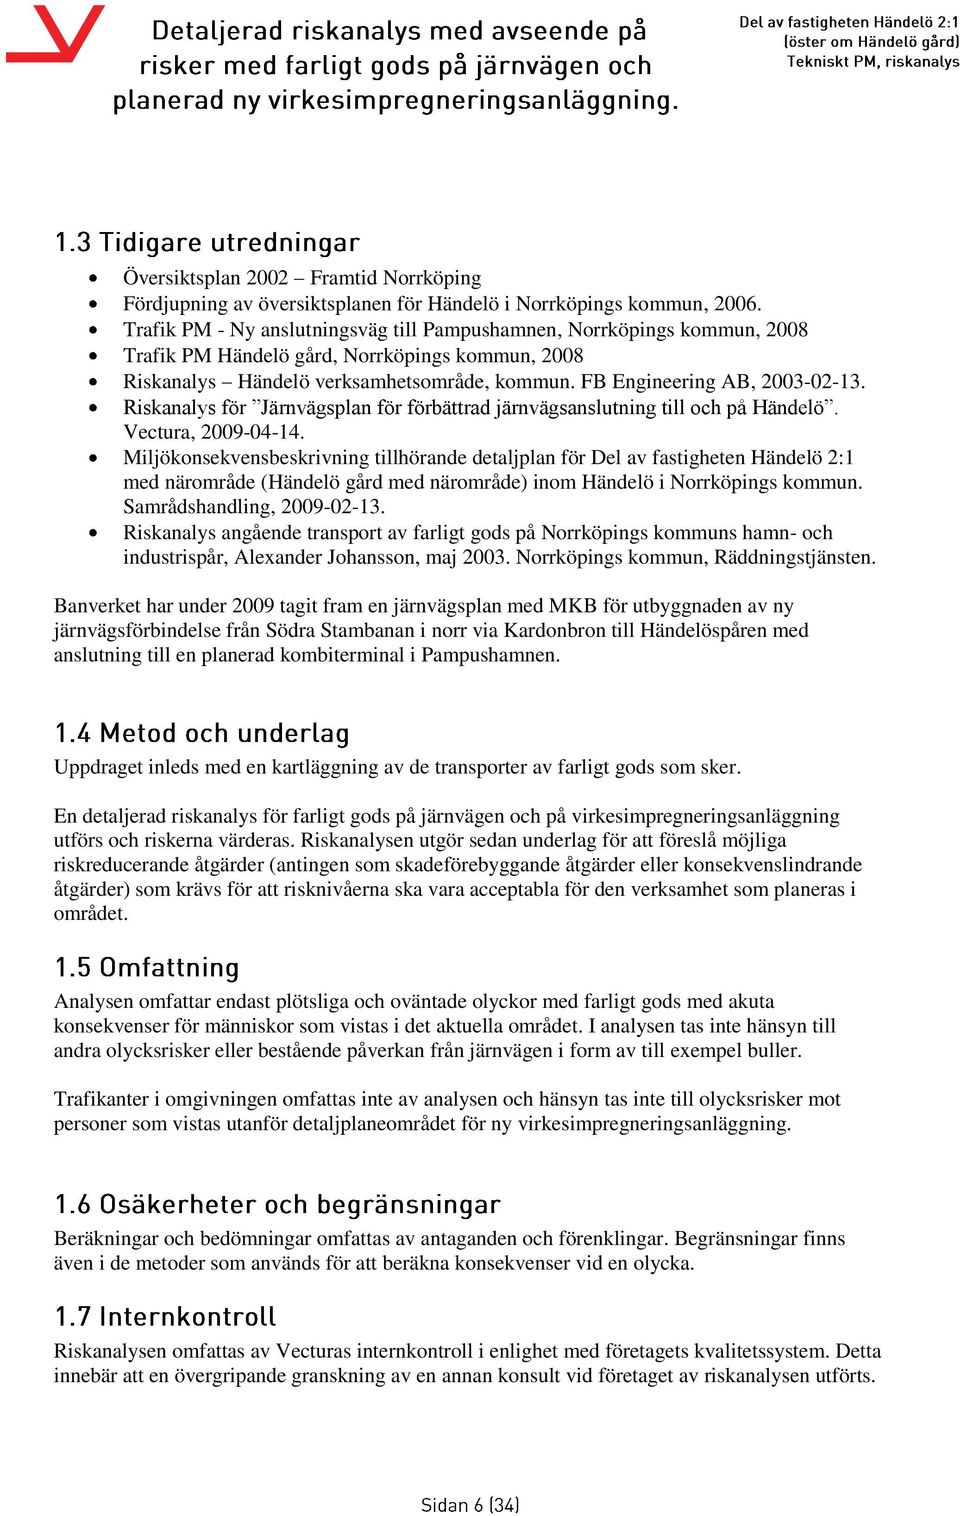 Riskanalys för Järnvägsplan för förbättrad järnvägsanslutning till och på Händelö. Vectura, 2009-04-14.